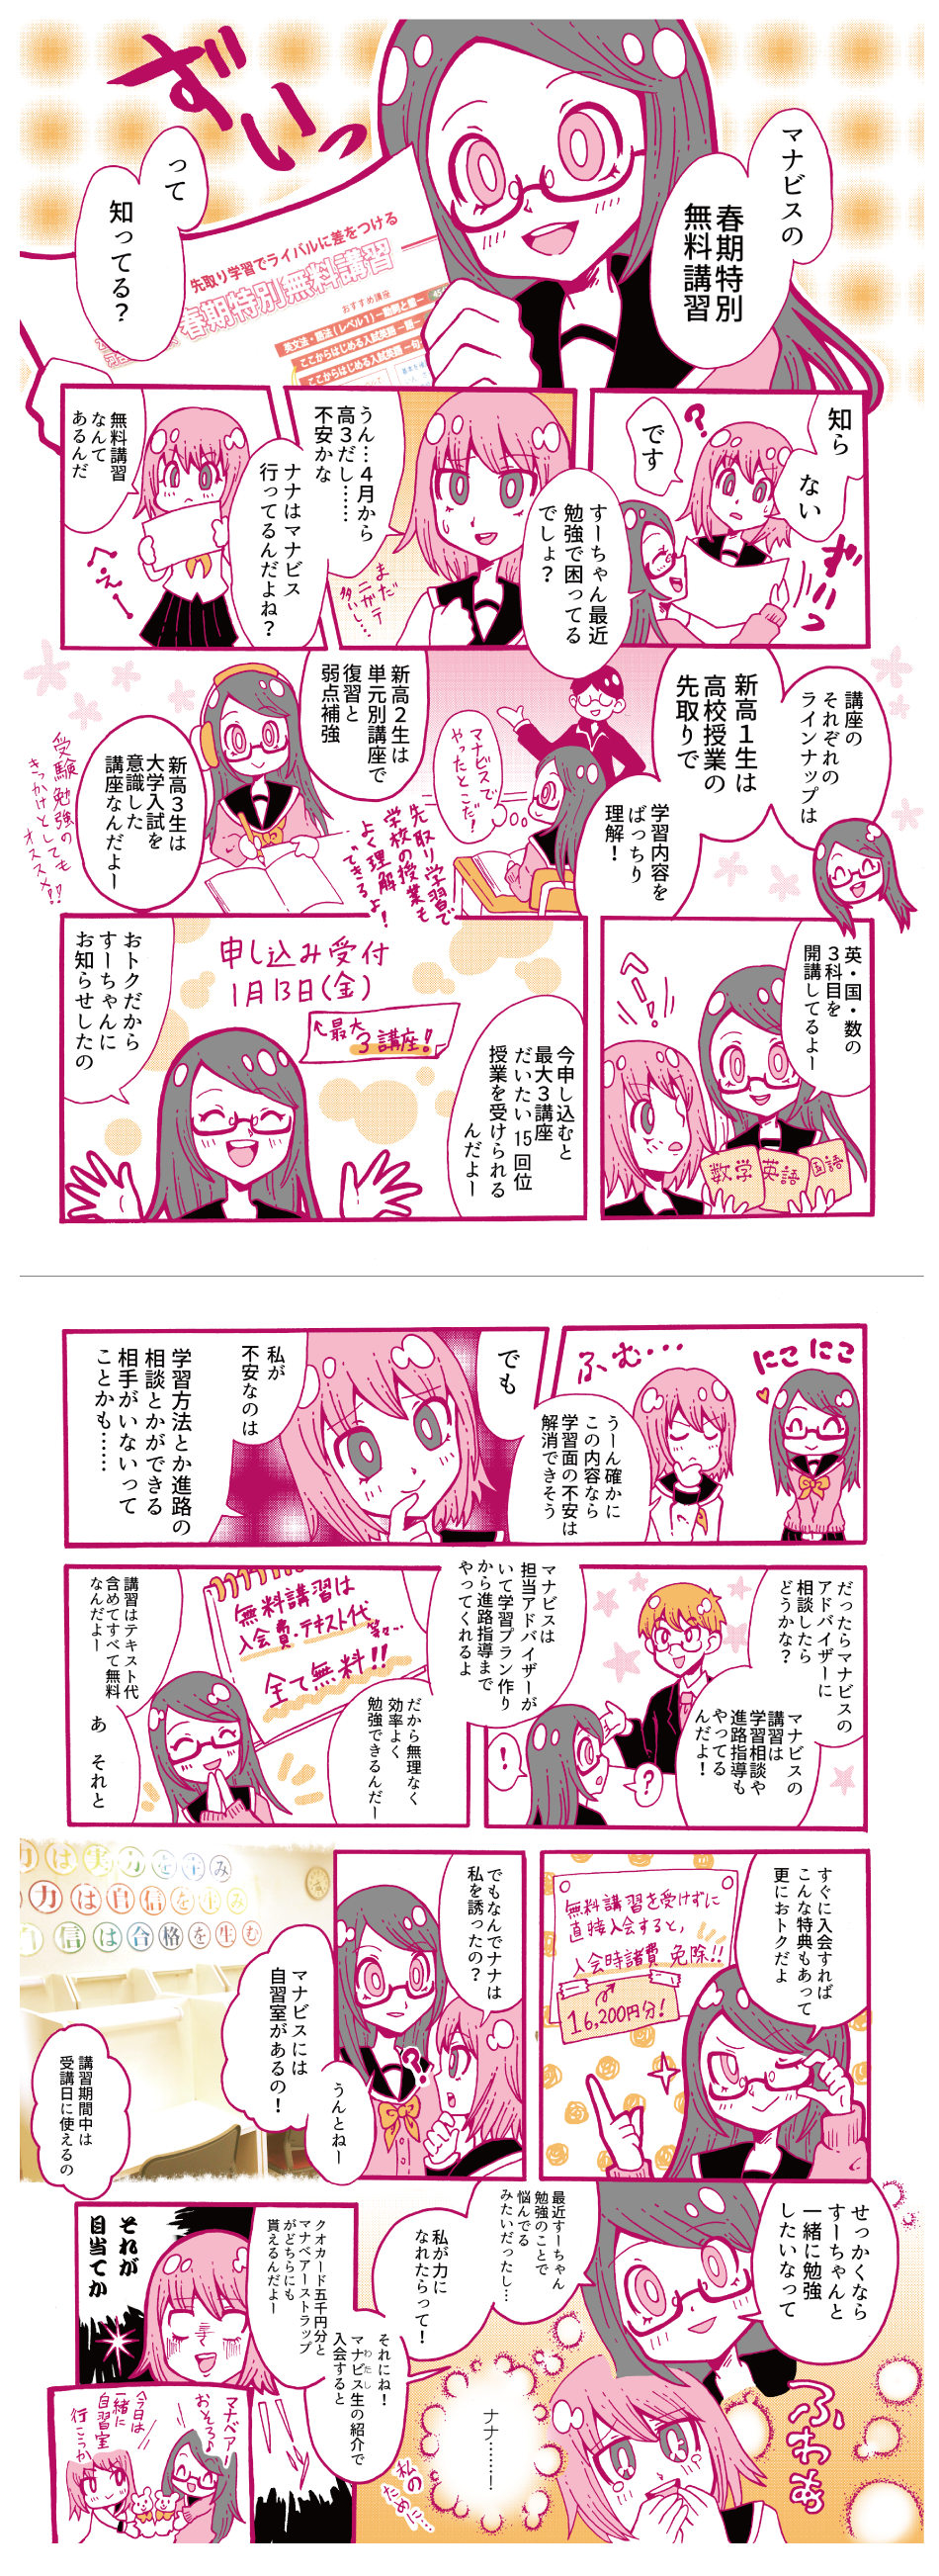 manga_page4